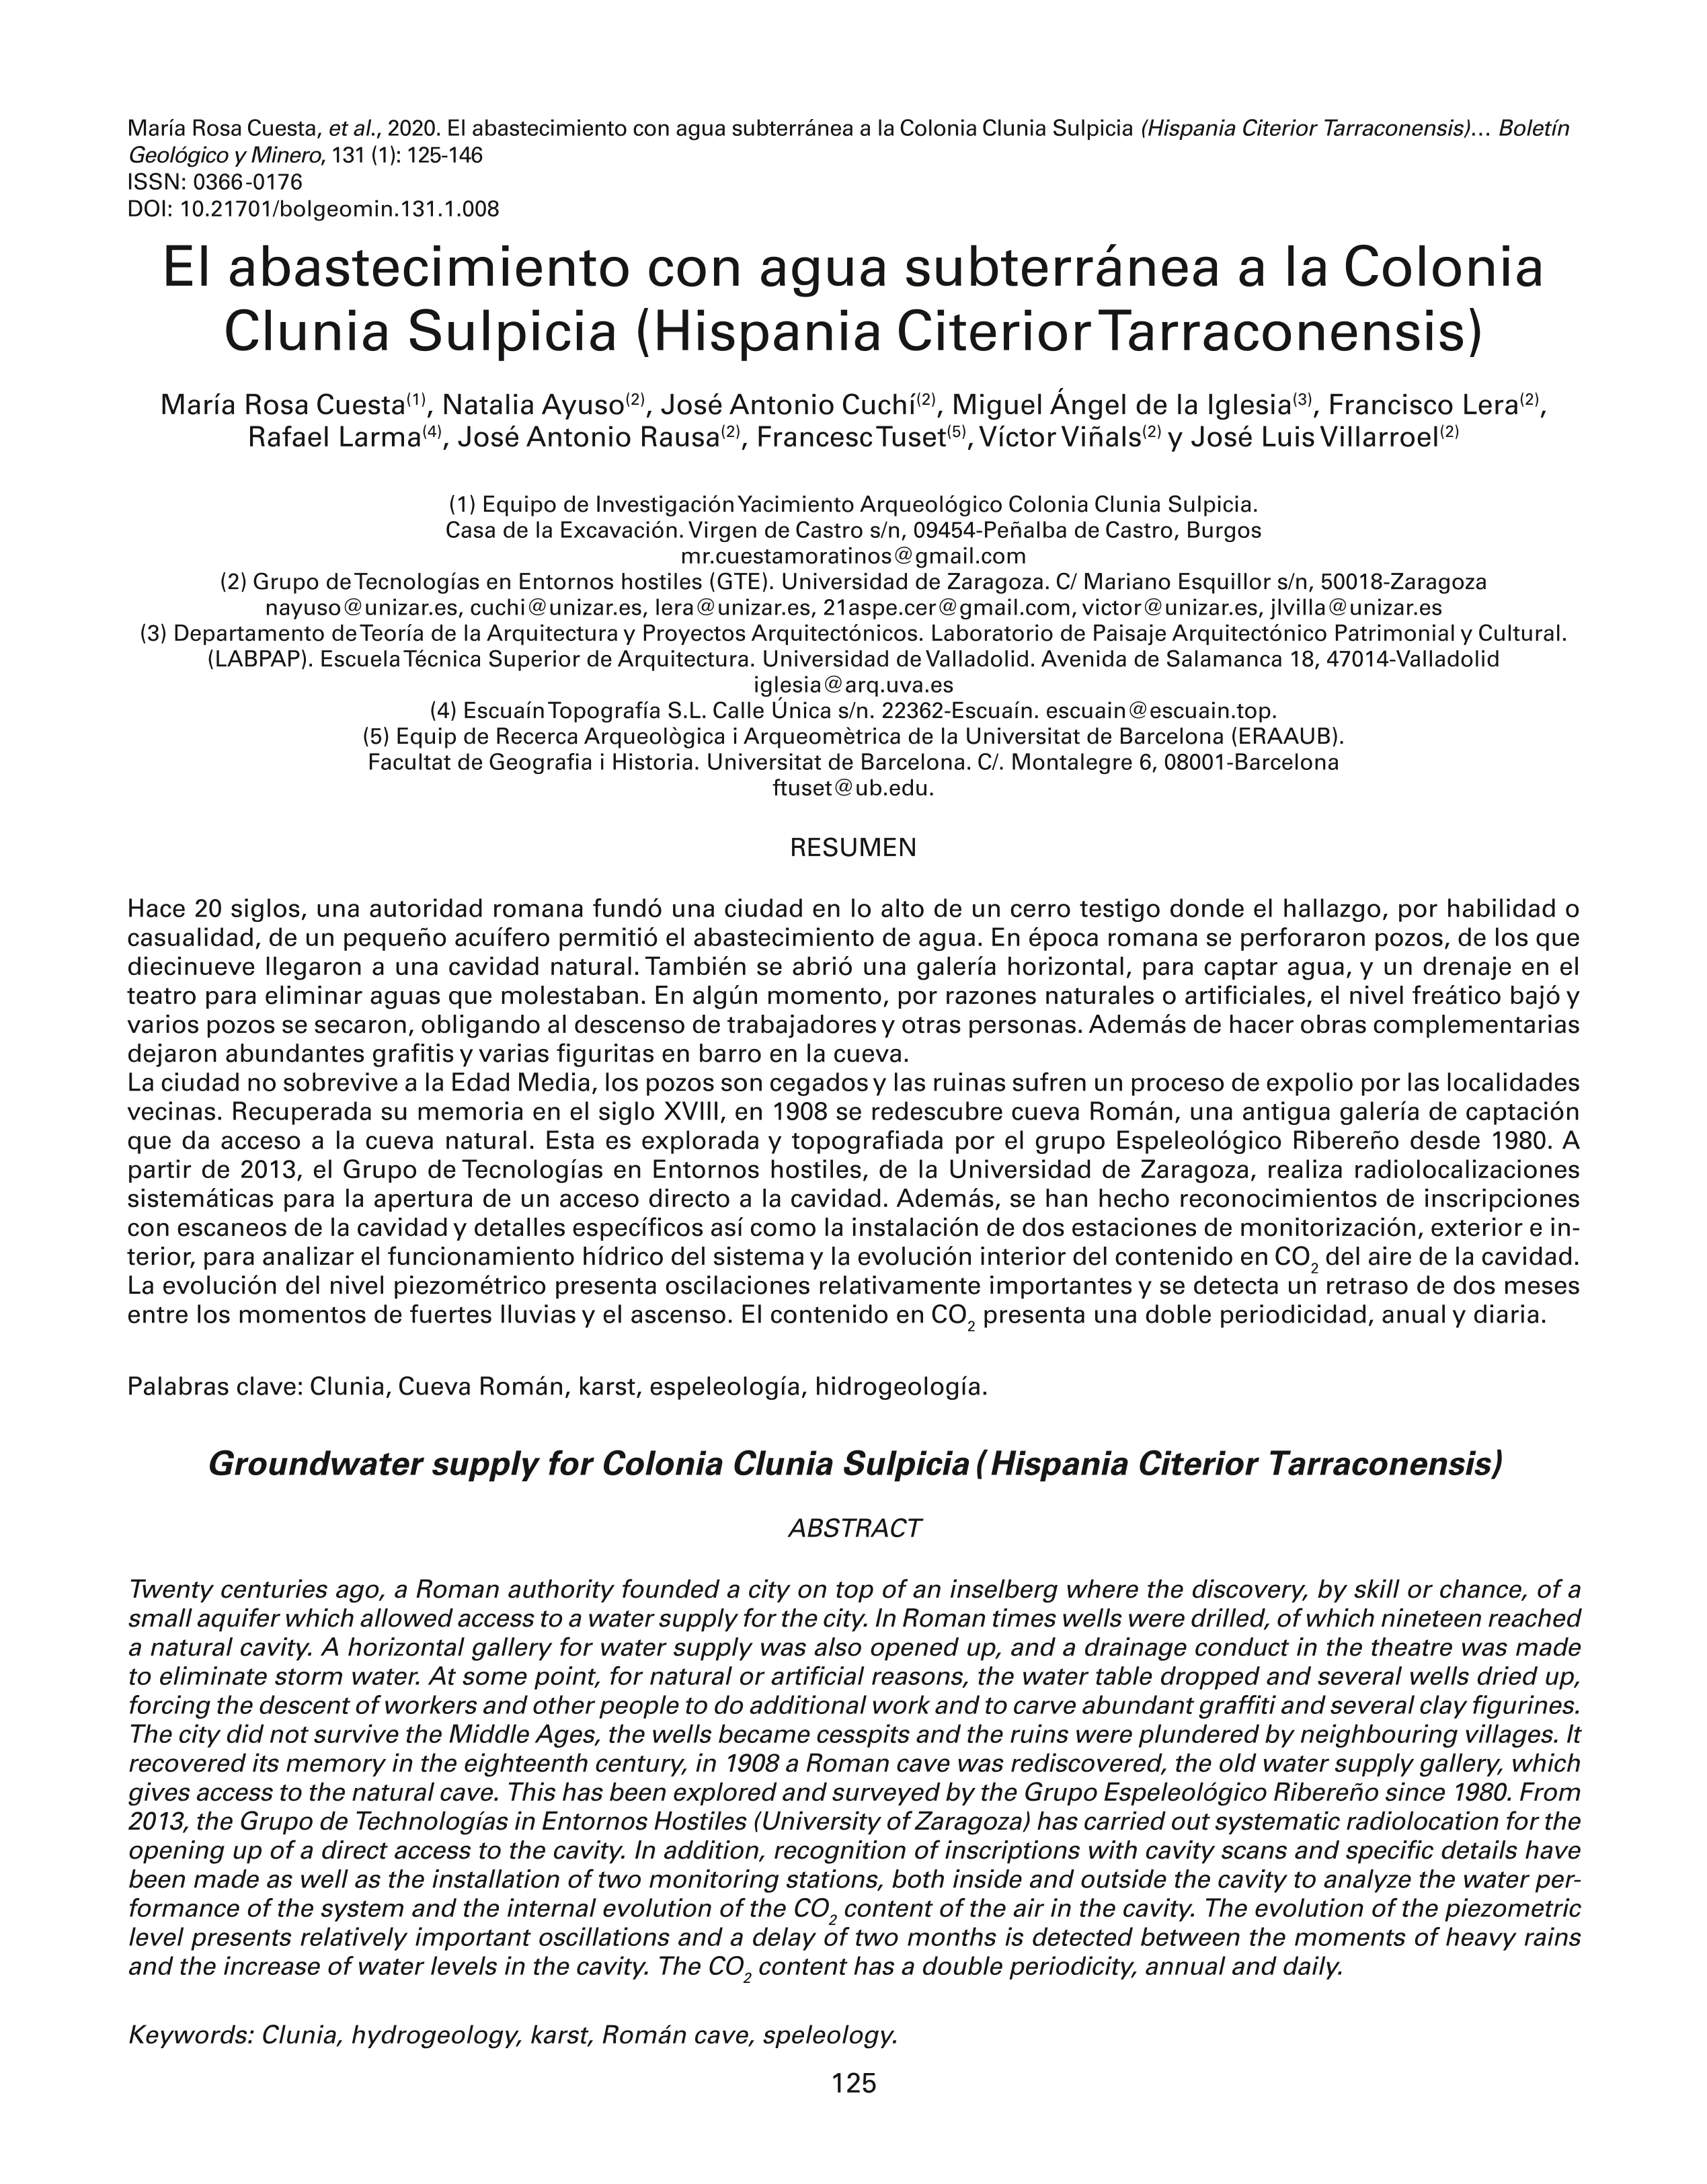 El abastecimiento con agua subterránea a la Colonia Clunia Sulpicia (Hispania Citerior Tarraconensis).